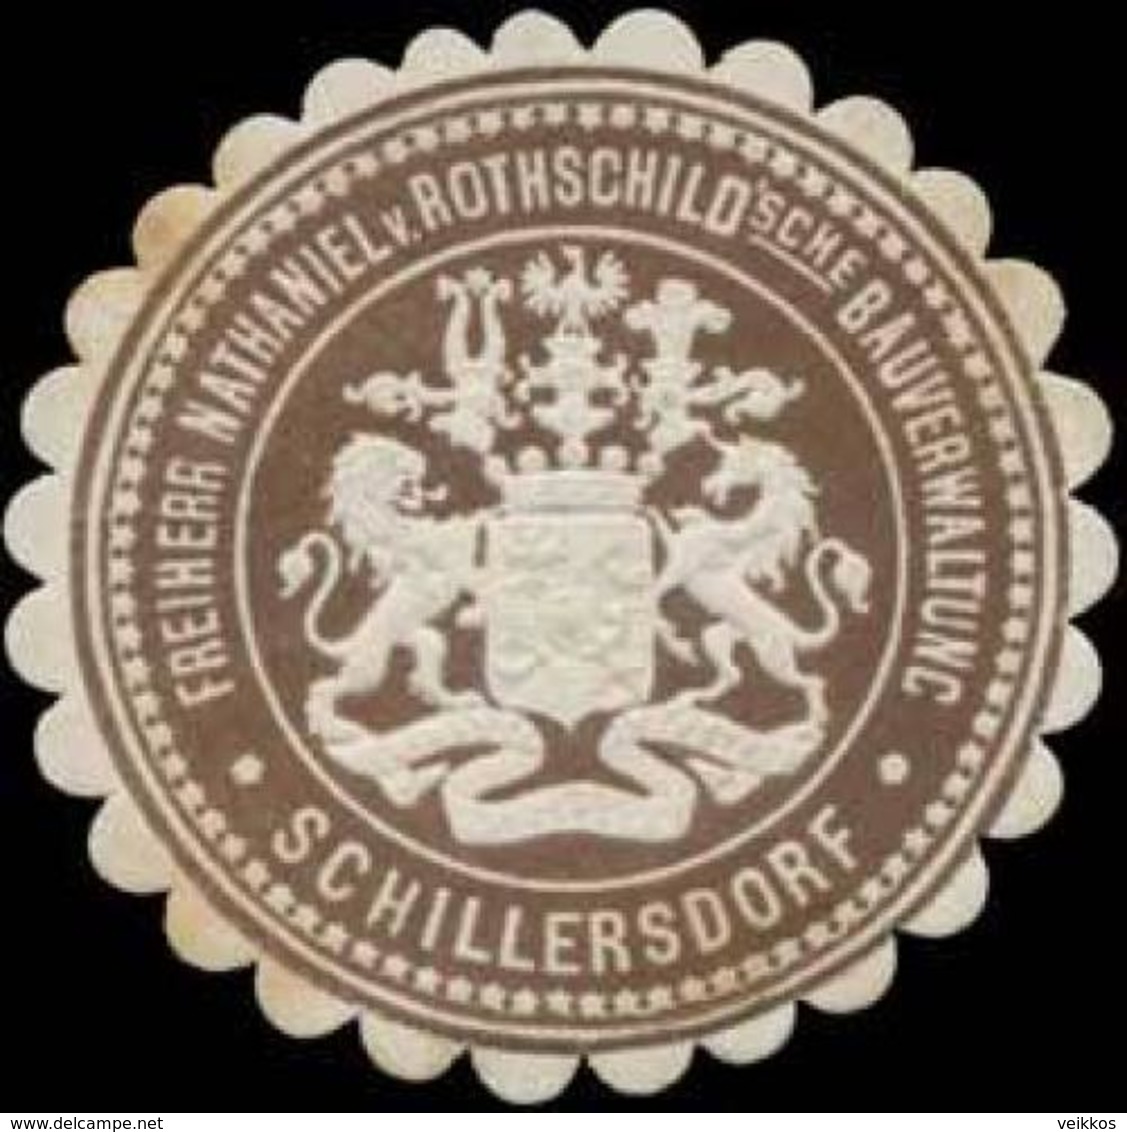 Schillersdorf: Freiherr Nathaniel Von Rothschildsche Bauverwaltung Schillersdorf Siegelmarke - Vignetten (Erinnophilie)